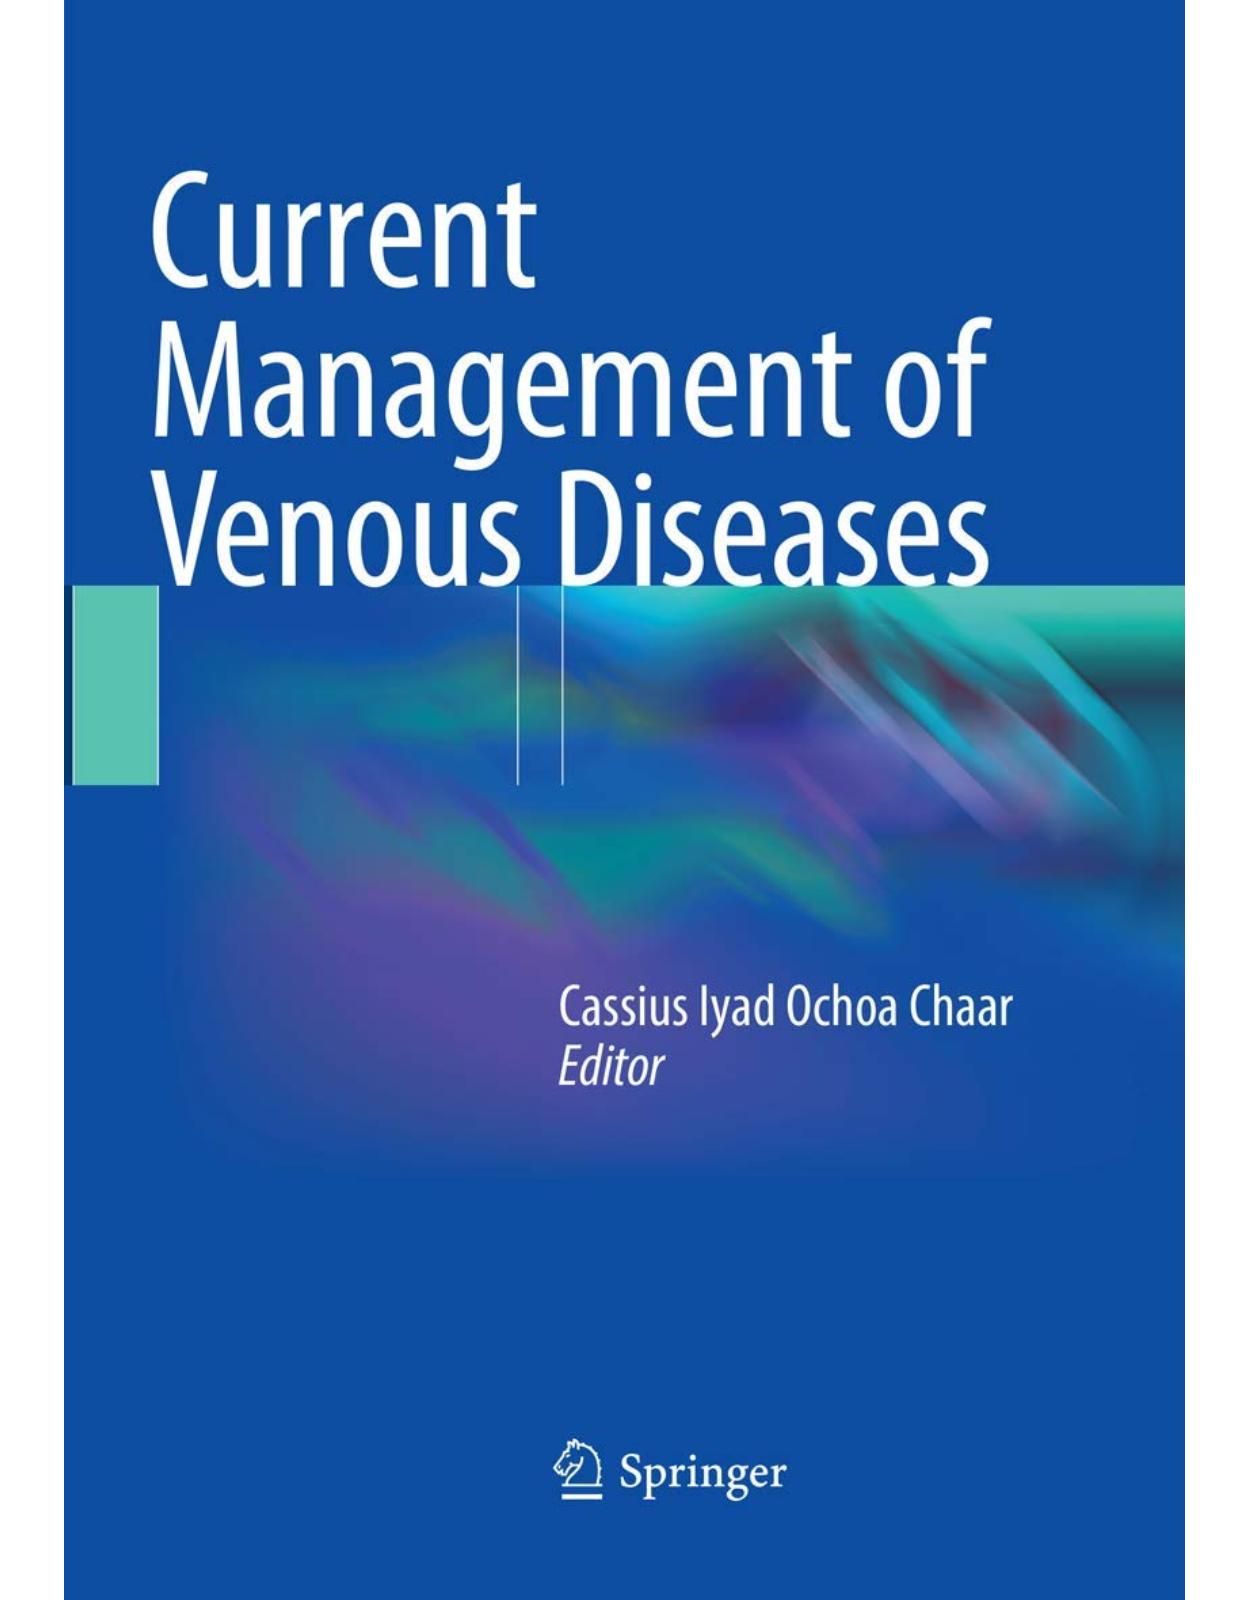 Current Management of Venous Diseases